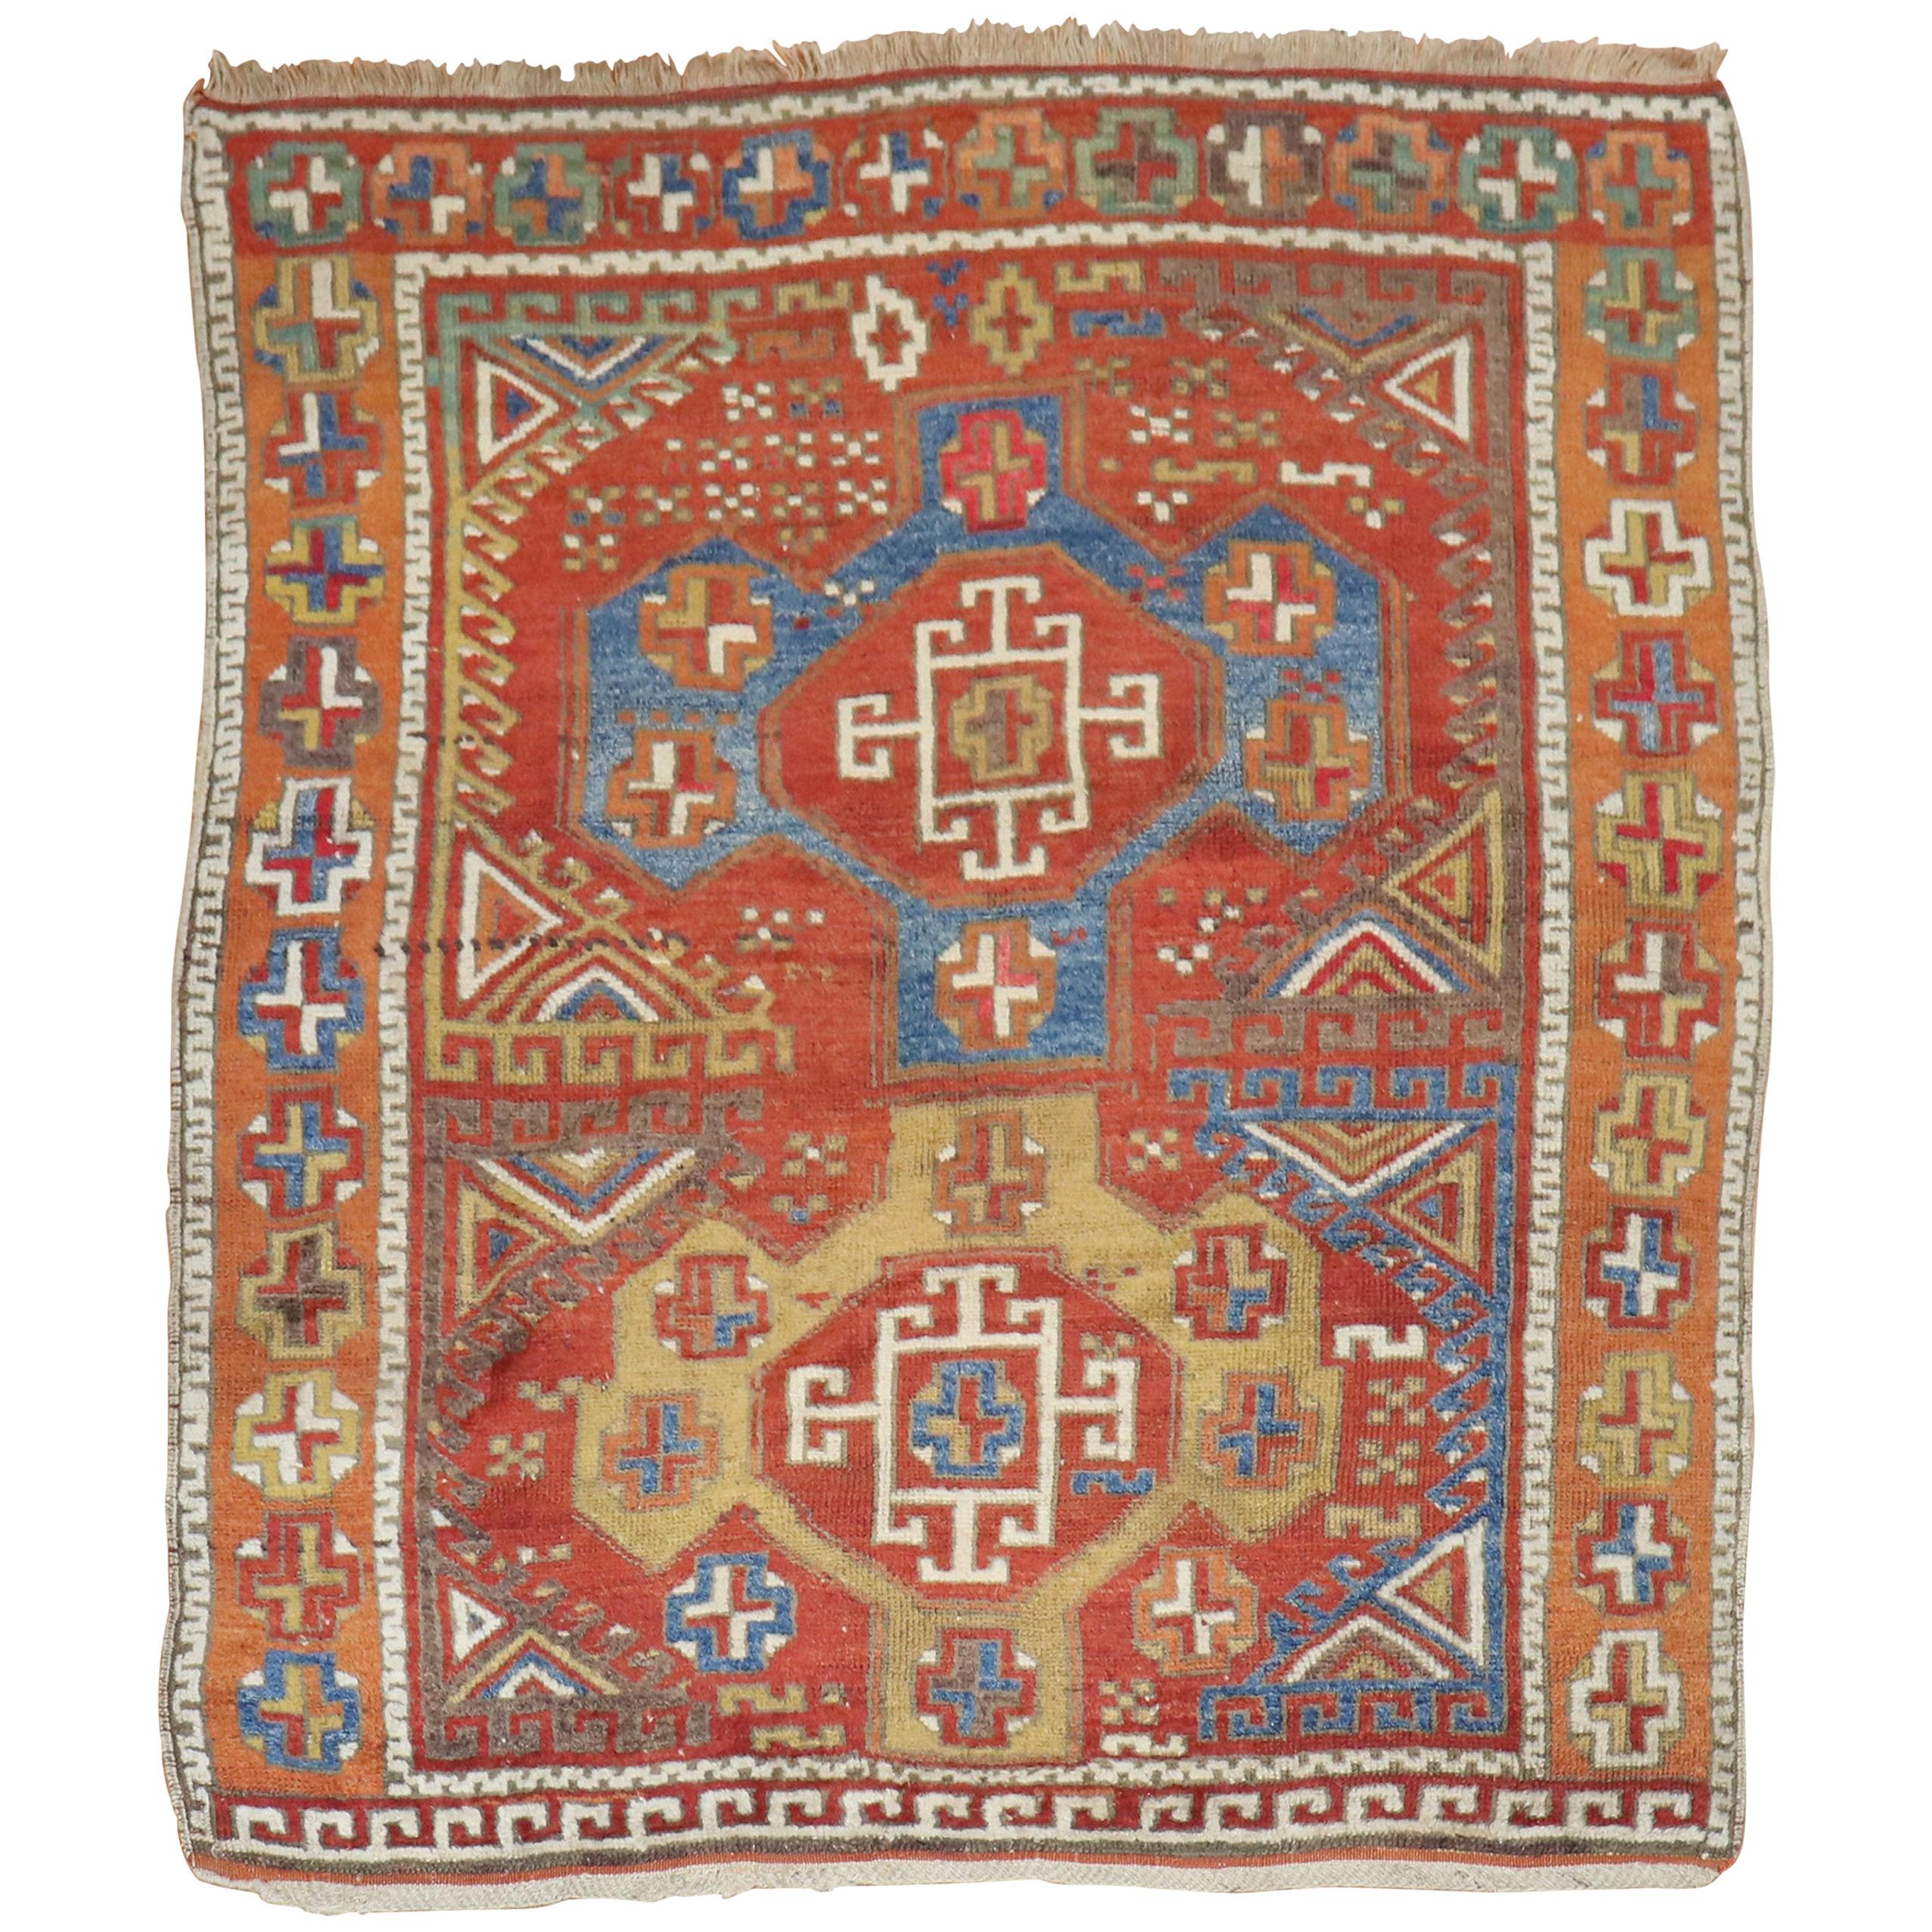 Türkischer Bergama-Teppich aus dem 19. Jahrhundert